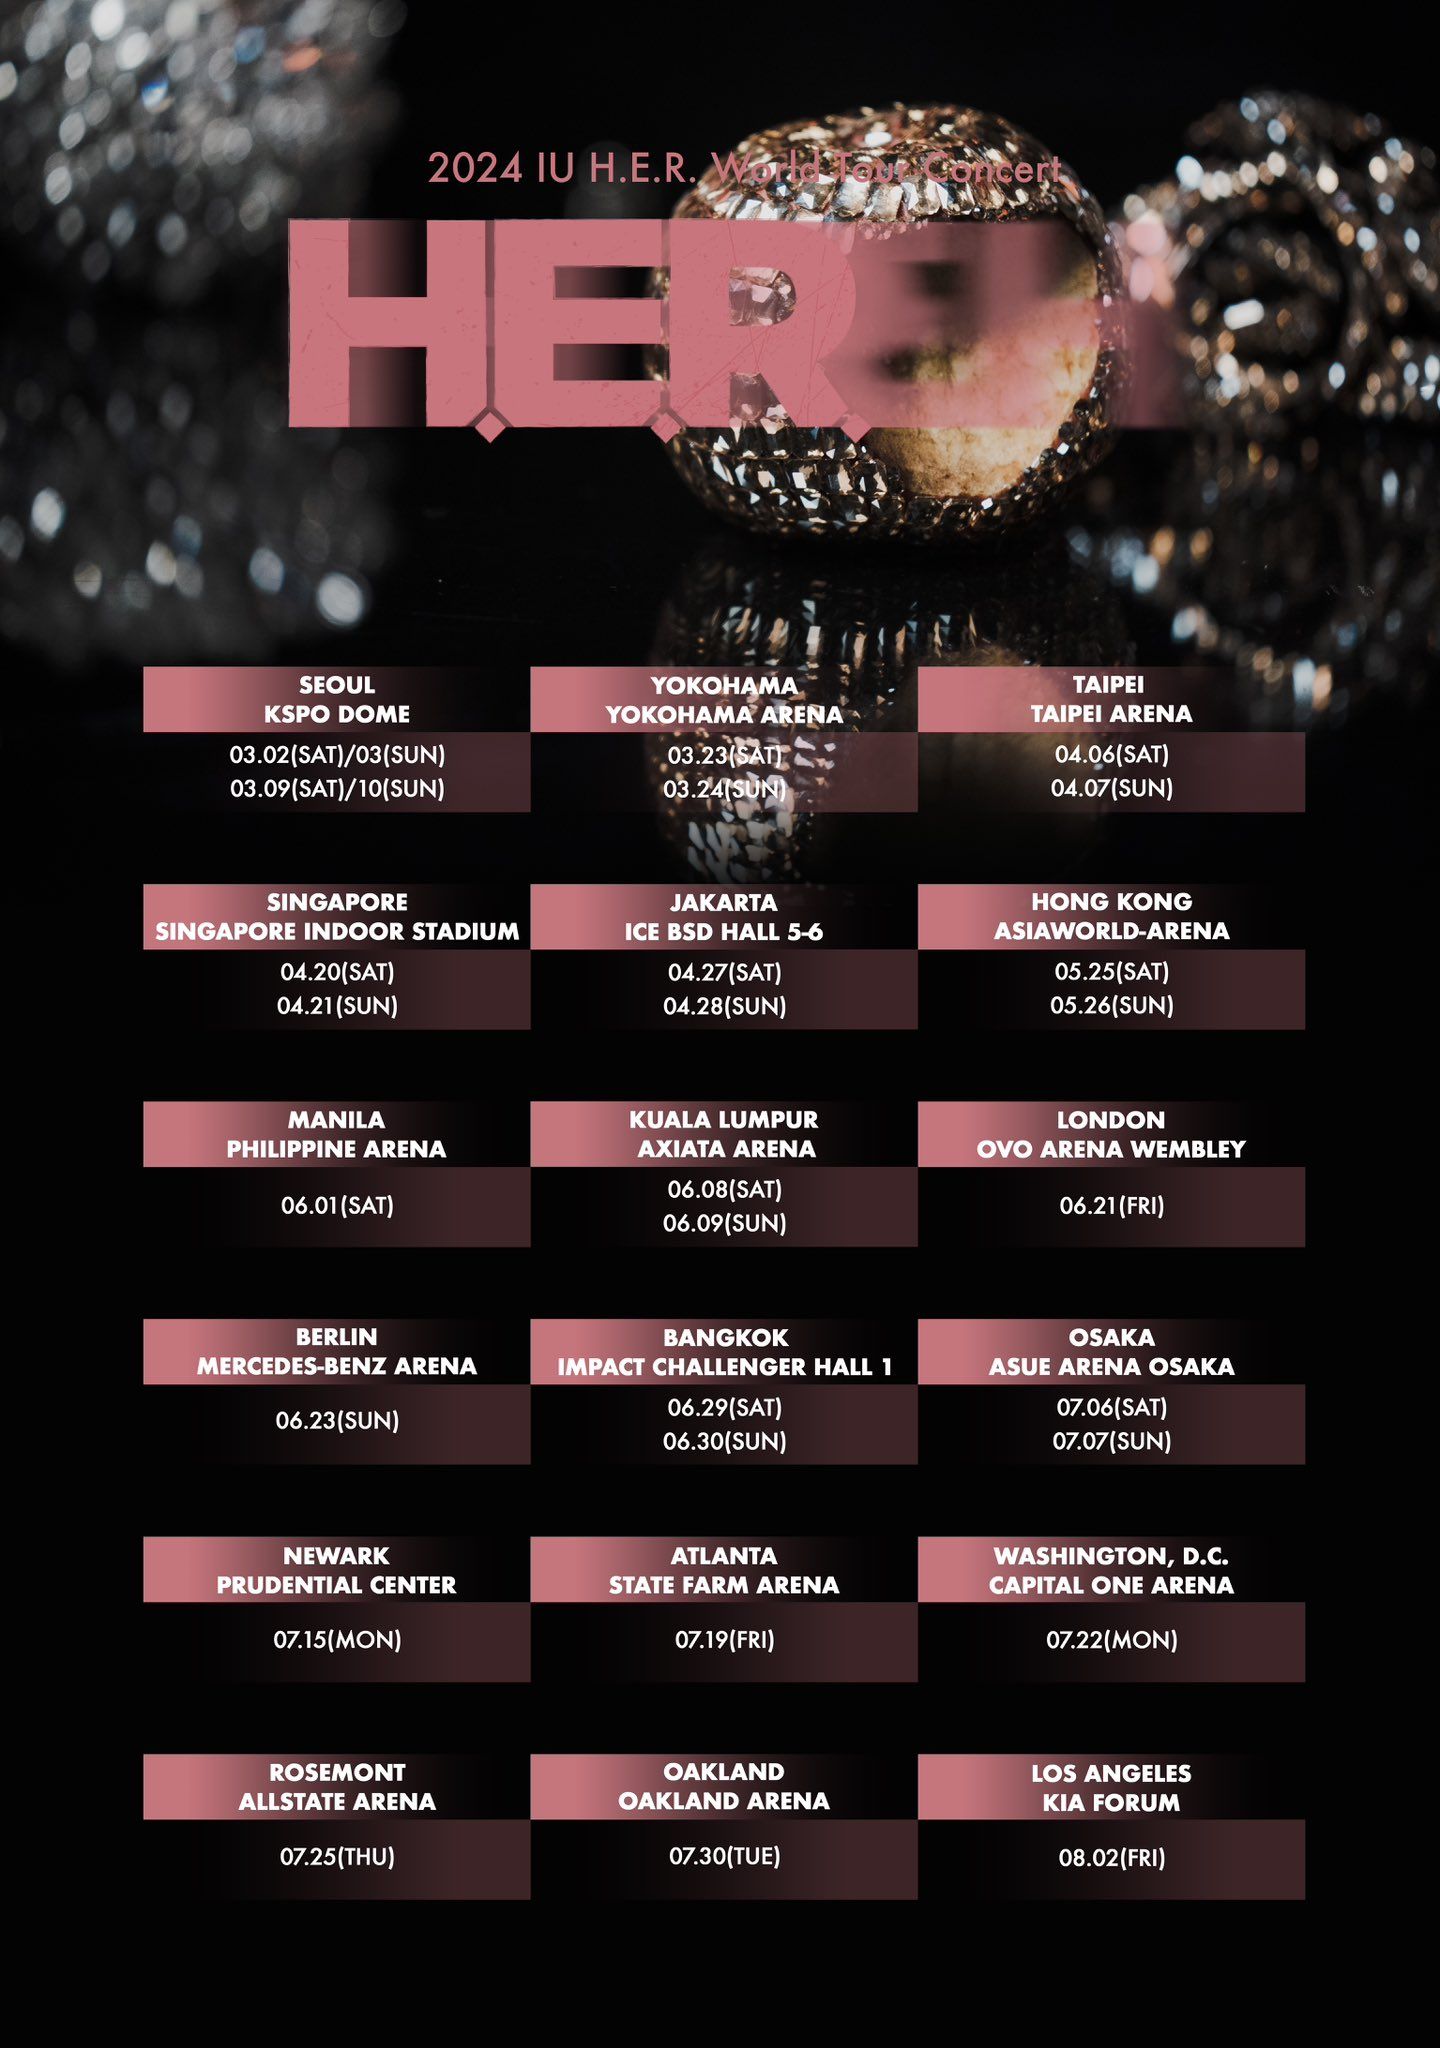 Daftar 18 kota lokasi konser tur dunia IU bertajuk "2024 IU H.E.R World Tour Concert".